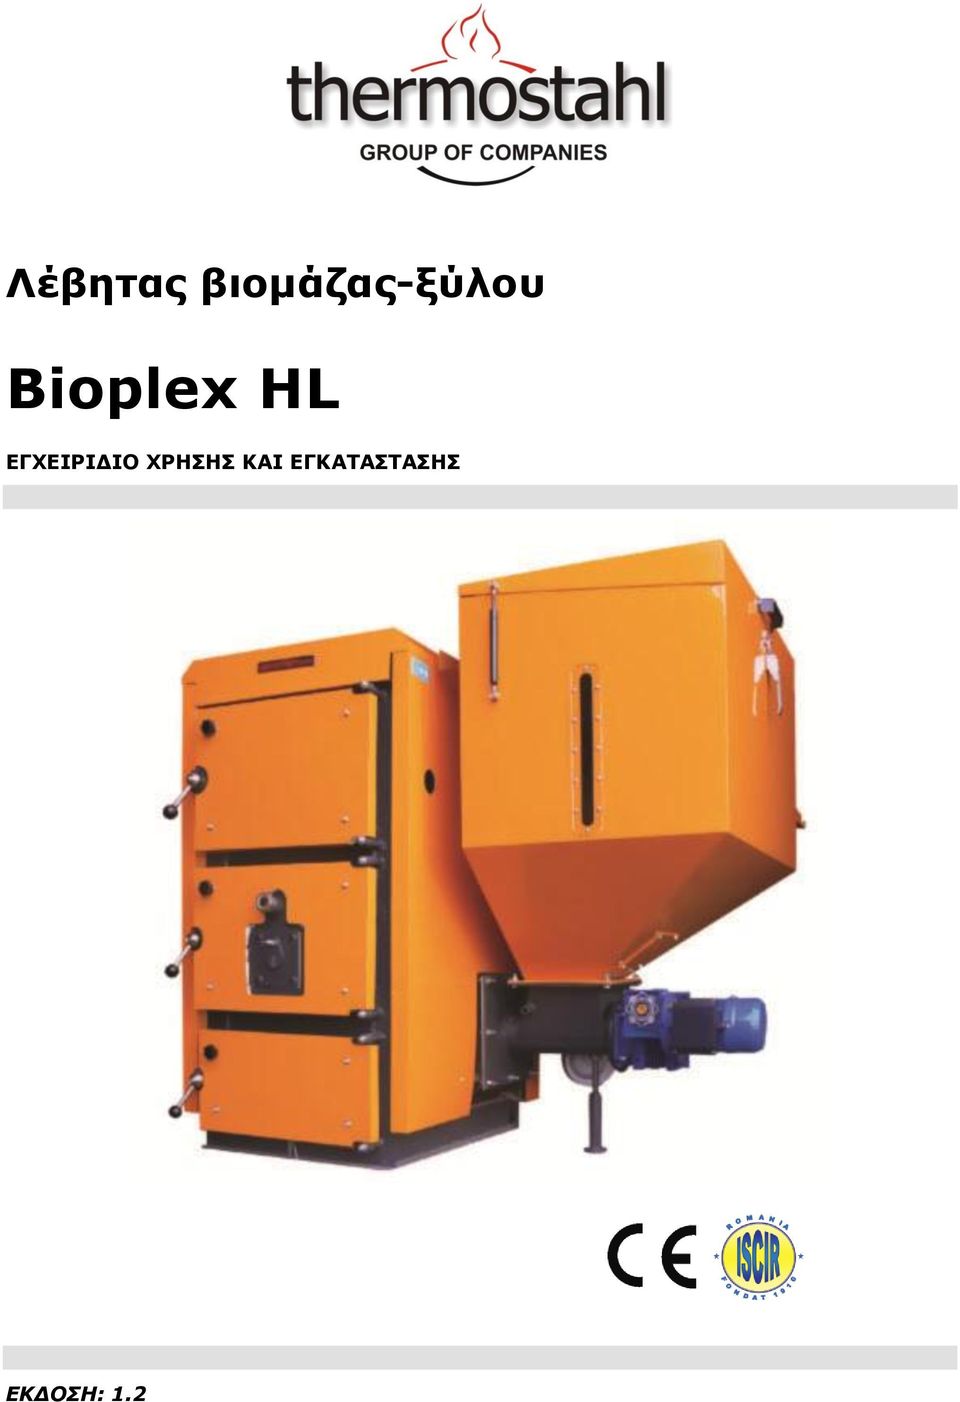 Bioplex HL